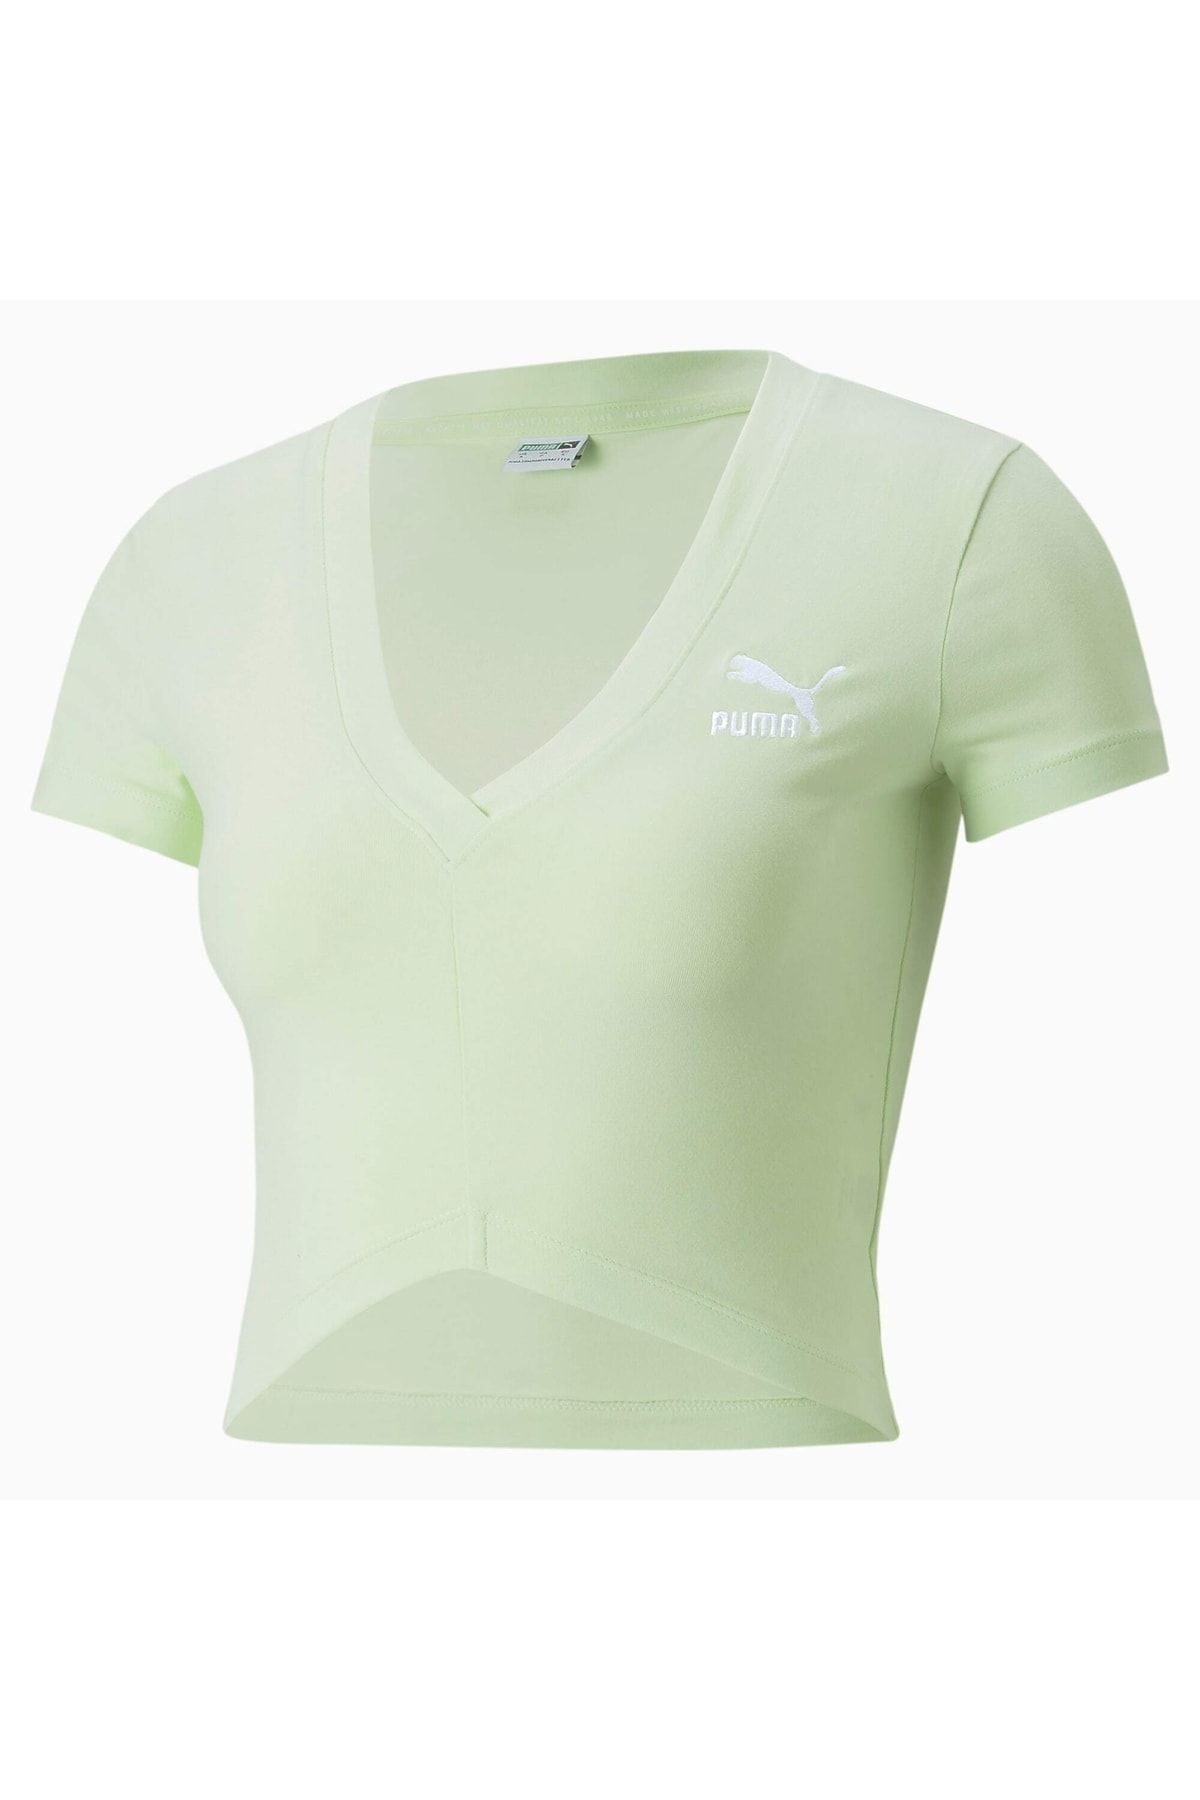 Puma Classics Kadın Yeşil Tişört (537154-32)